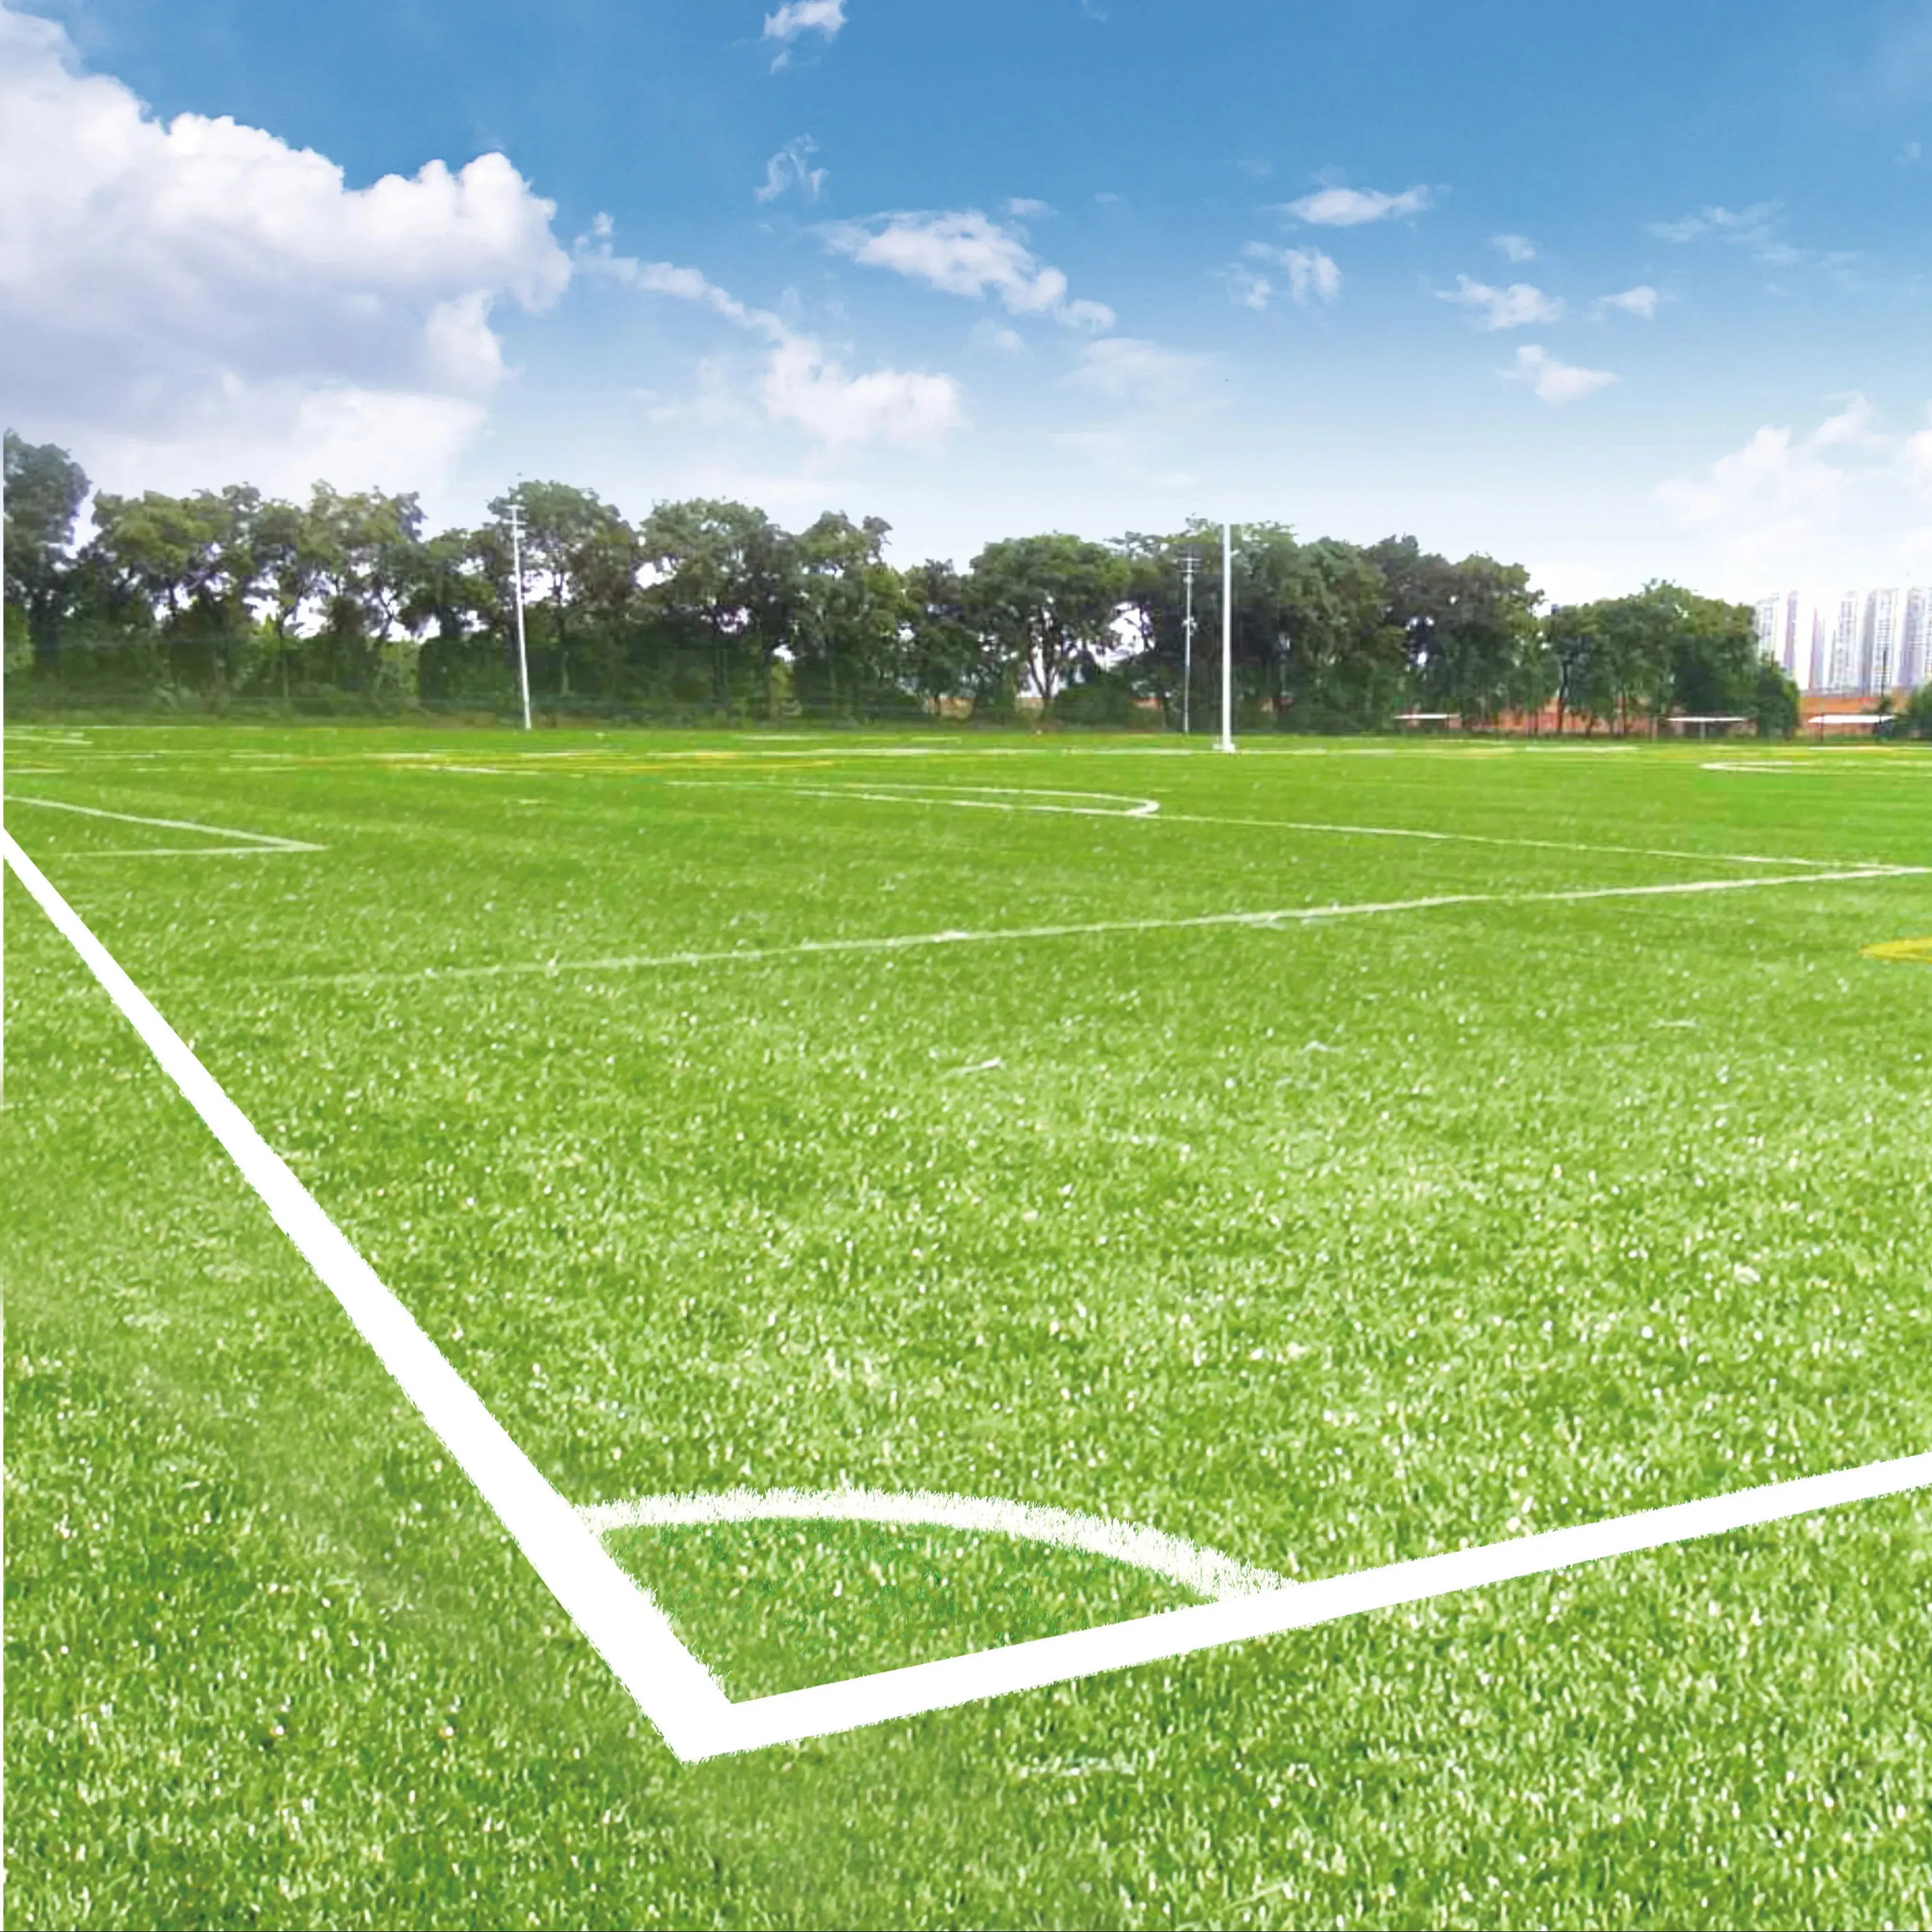 AVG lapangan sepak bola rumput buatan olahraga lantai karpet sepak bola